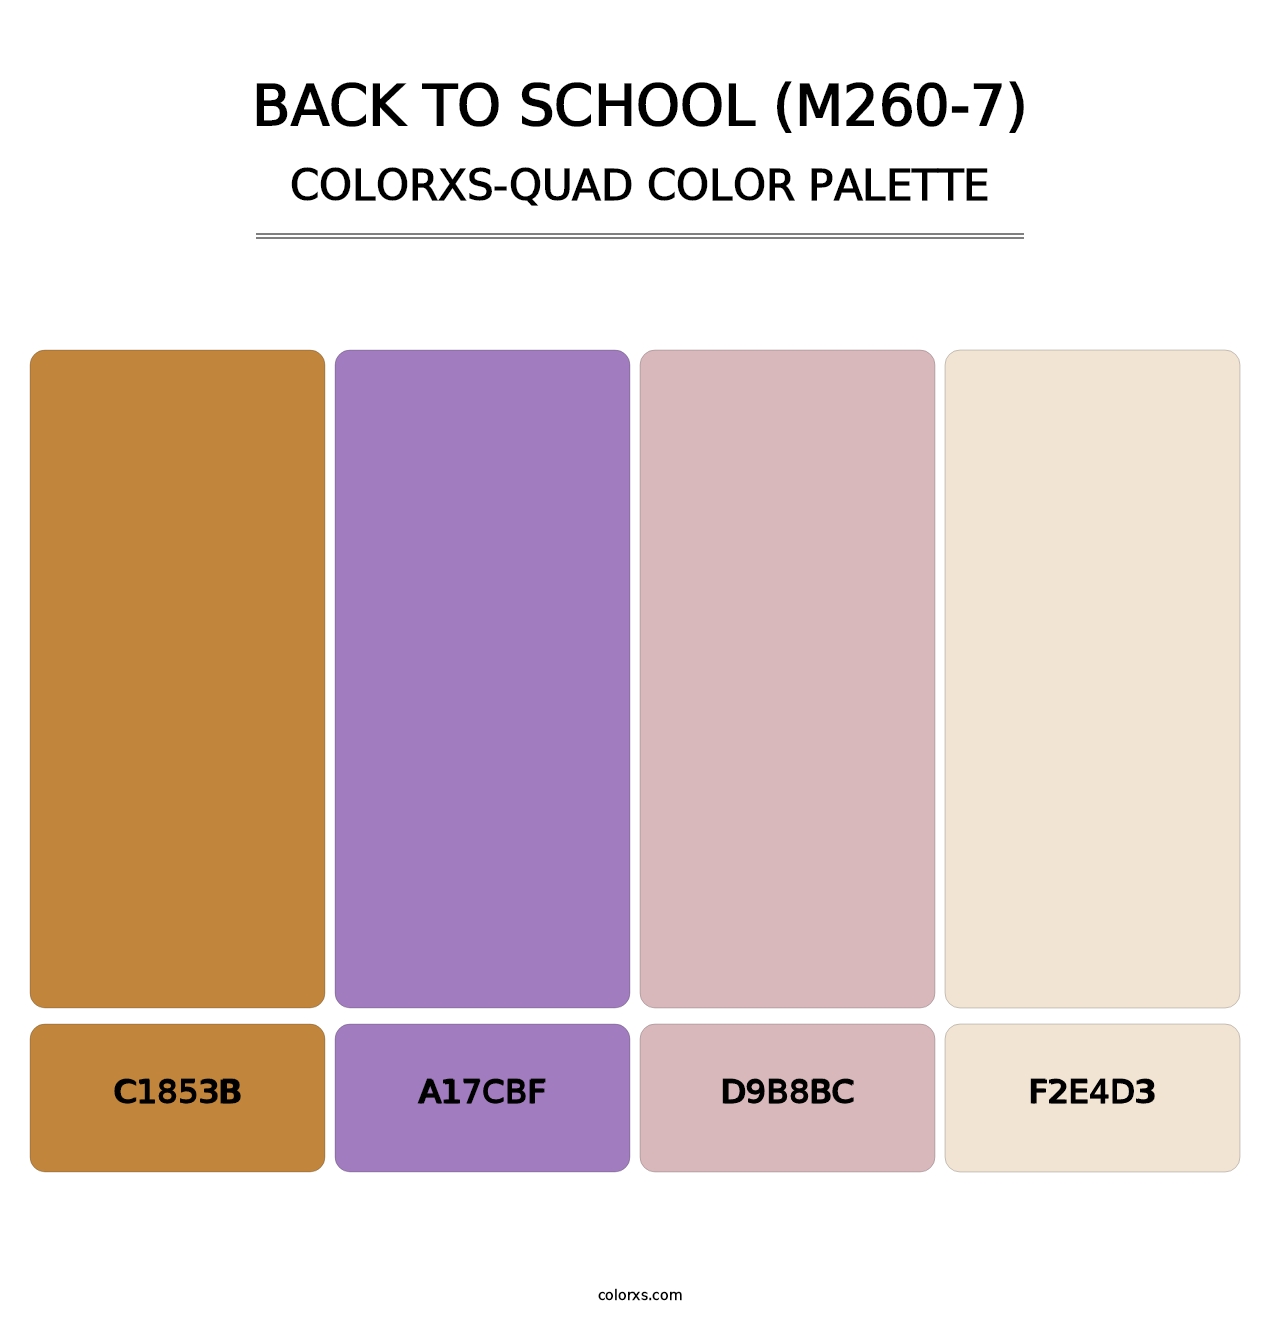 Back To School (M260-7) - Colorxs Quad Palette